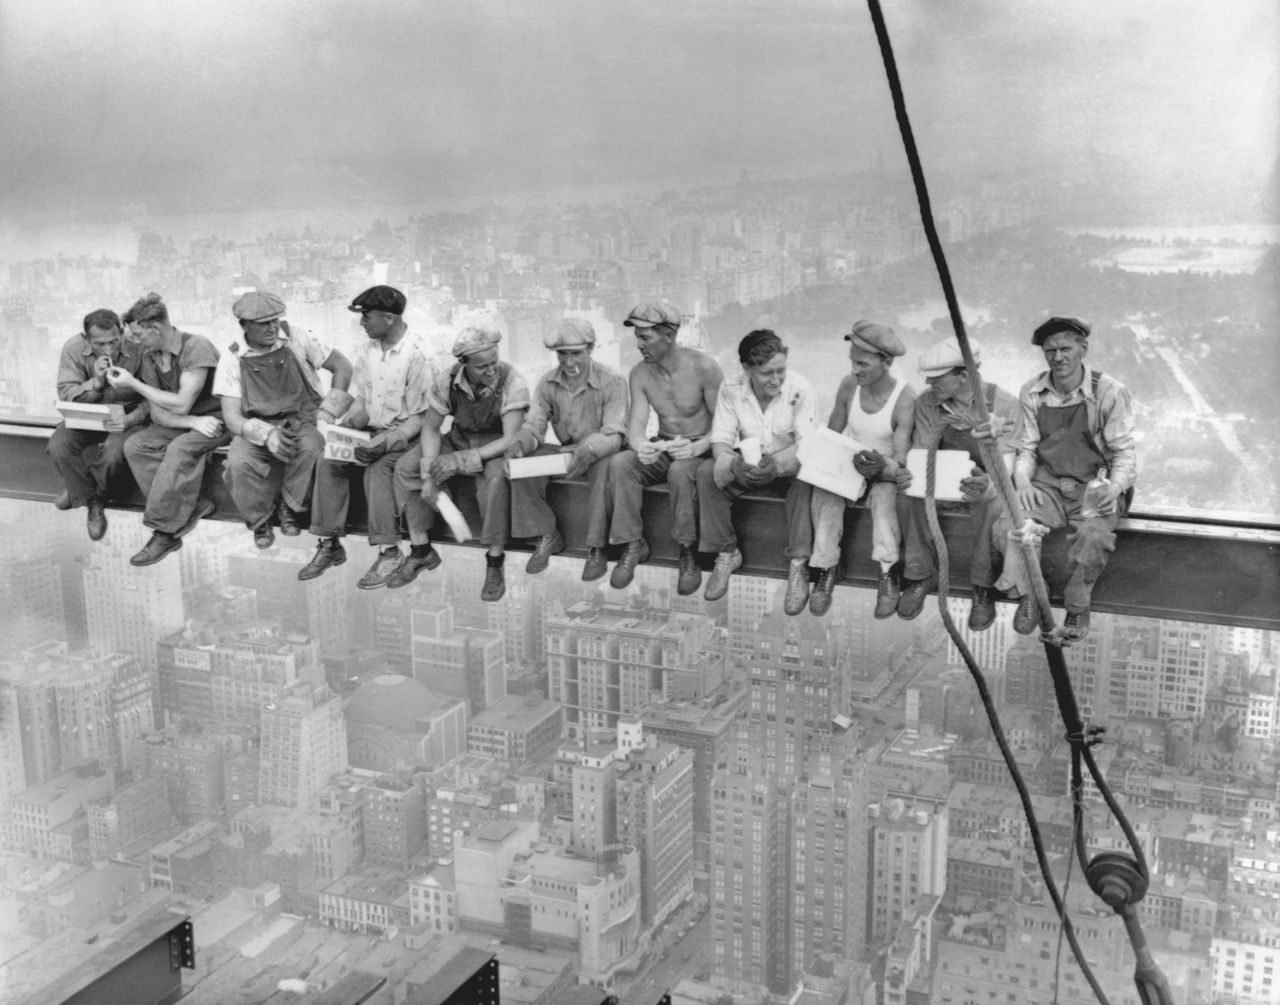 Słynne zdjęcie "Lunch atop a Skyscraper" przedstawiające robotników w czasie budowy GE Building we wrześniu 1932 roku.